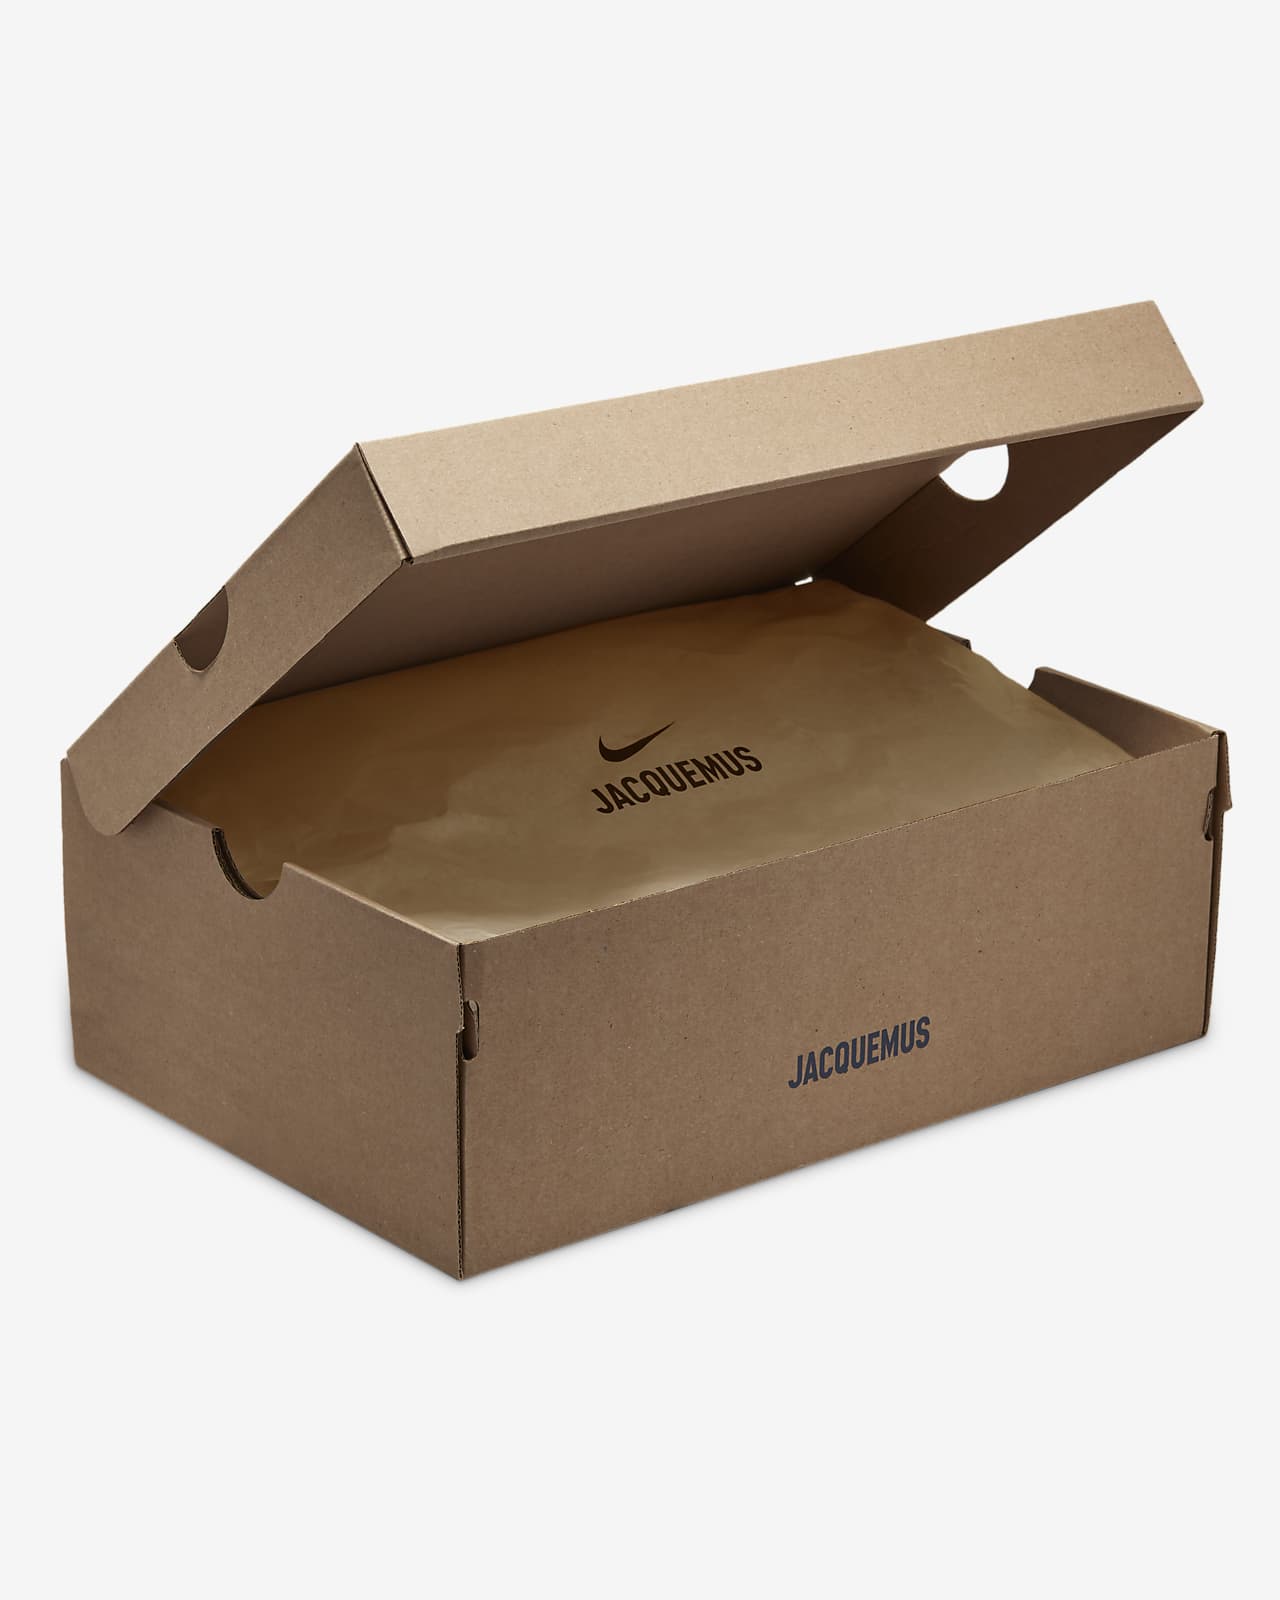 Bra box, Corrugated Packaging Box Manufacturer in India